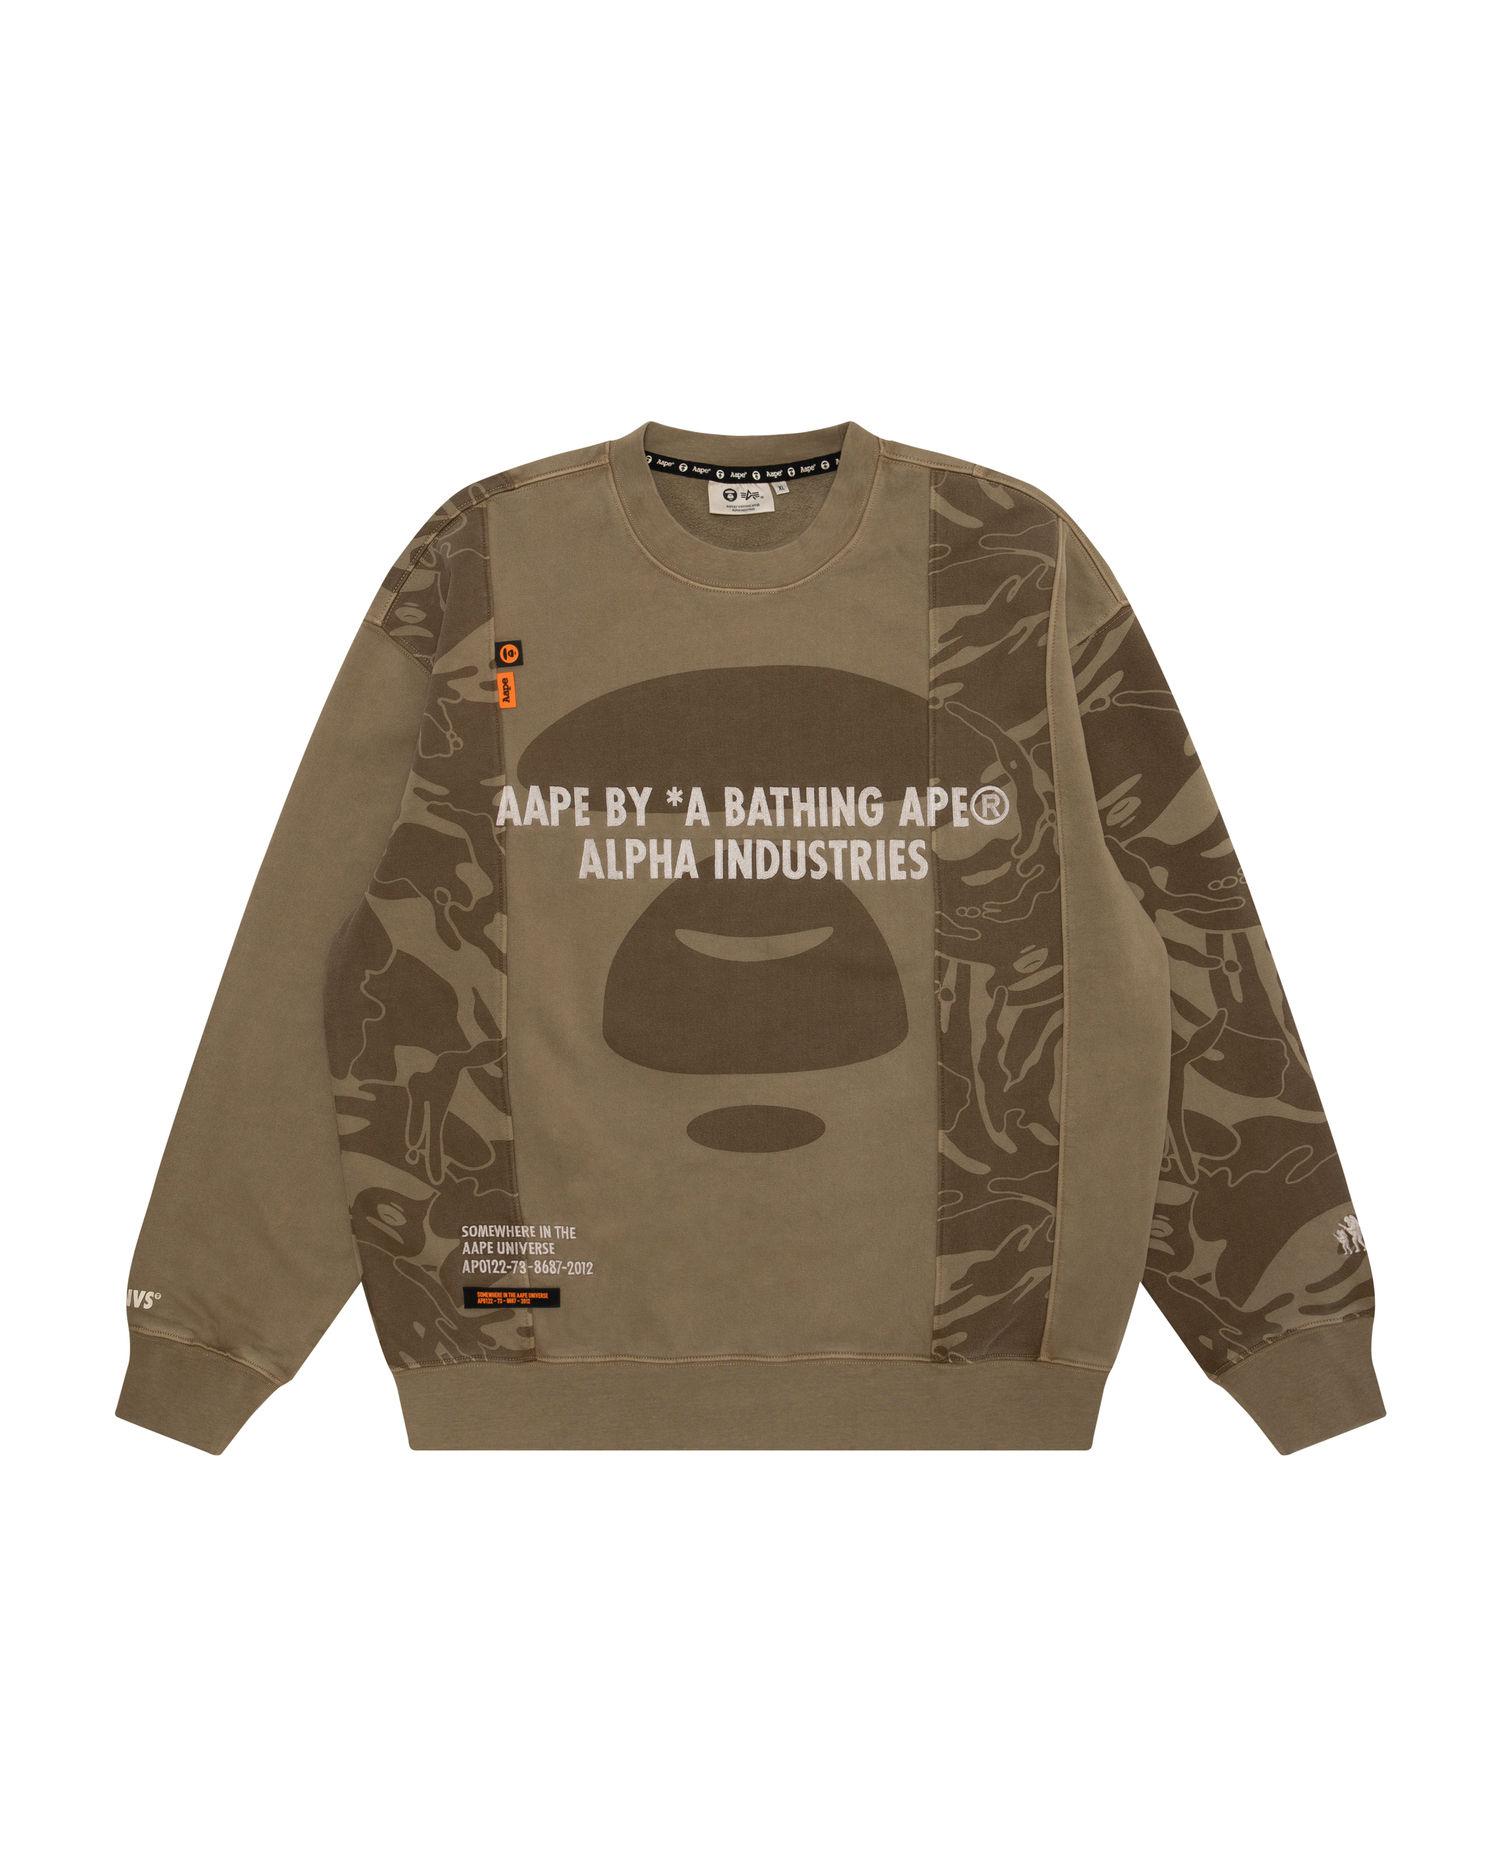 X Alpha Industries Moonface fleece sweatshirt by AAPE